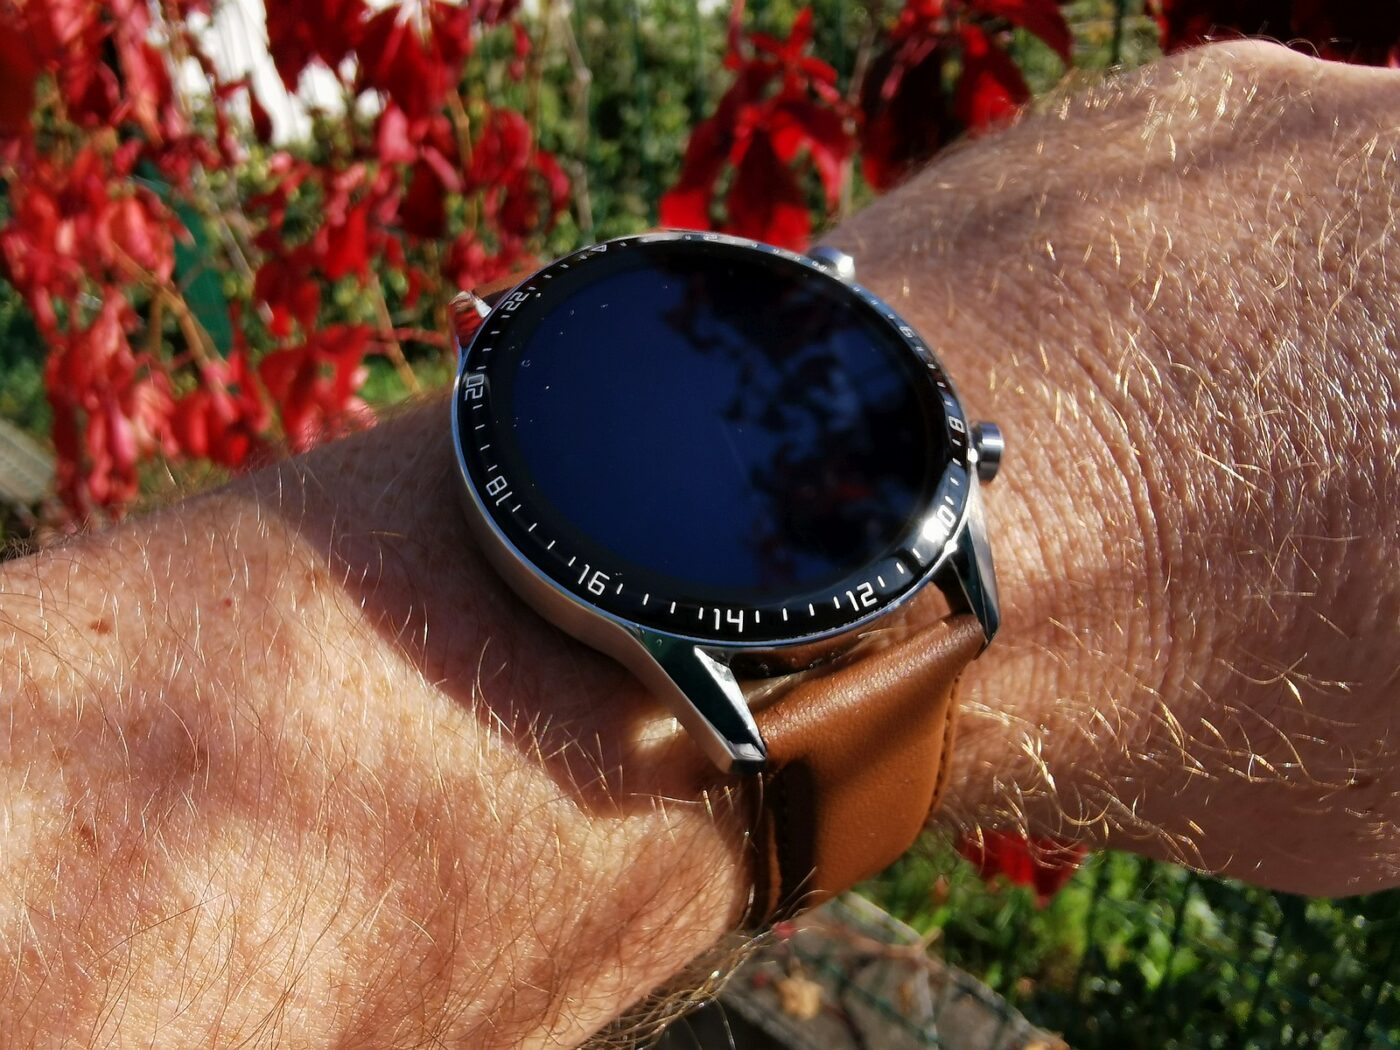 Huawei Watch GT 2 10